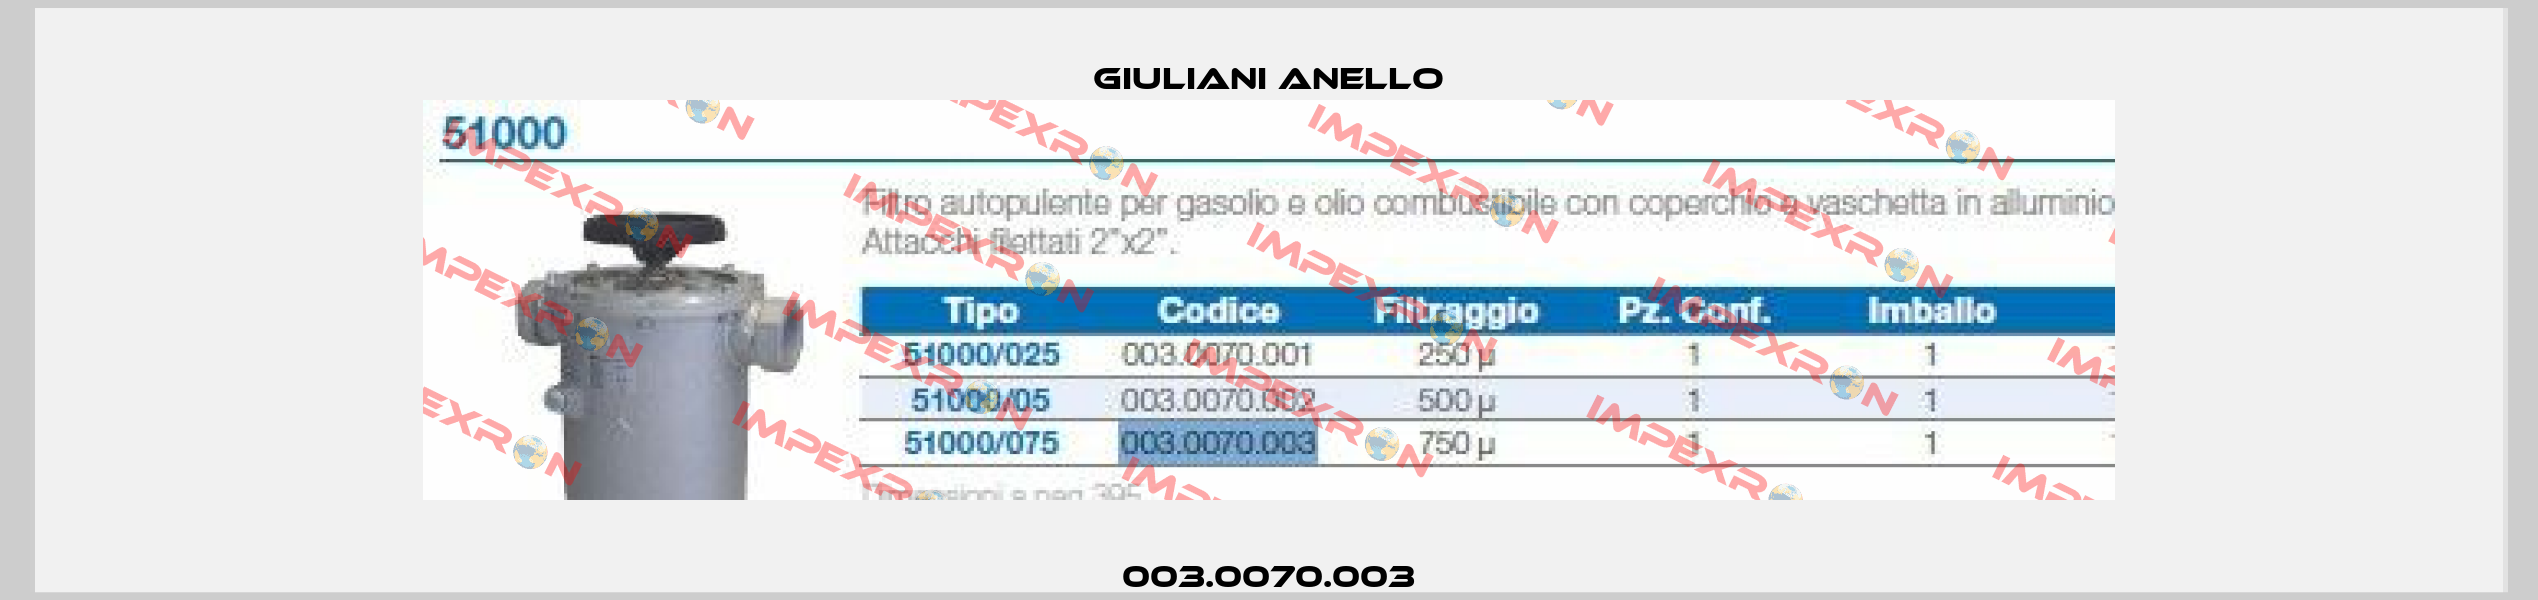 003.0070.003 Giuliani Anello